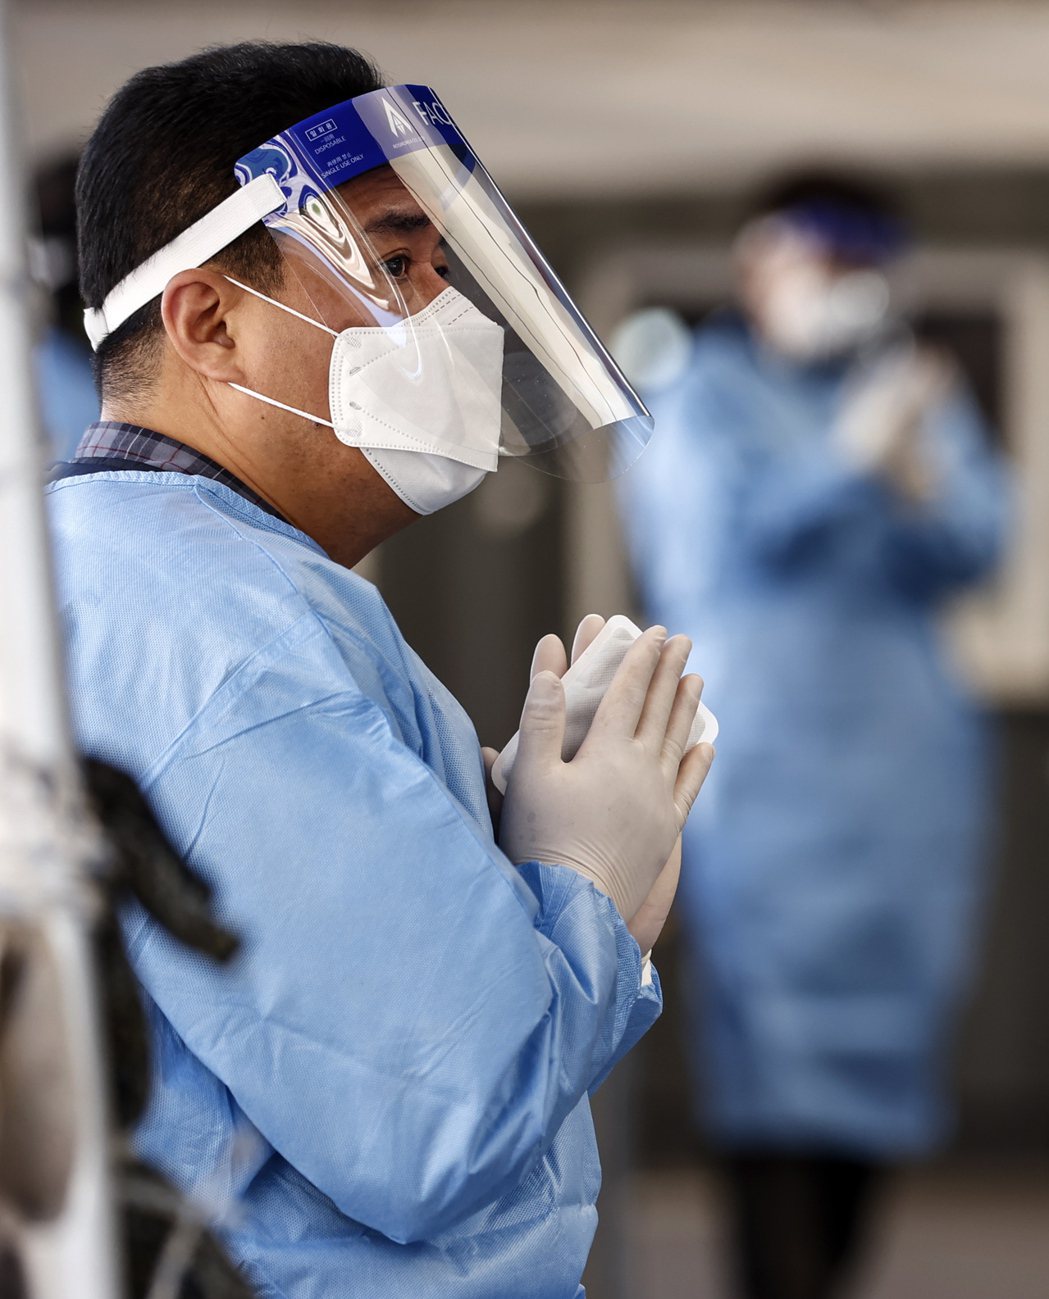 南韓首爾新冠肺炎檢測站一名醫護人員手握暖暖包抵禦寒冷低溫。歐新社